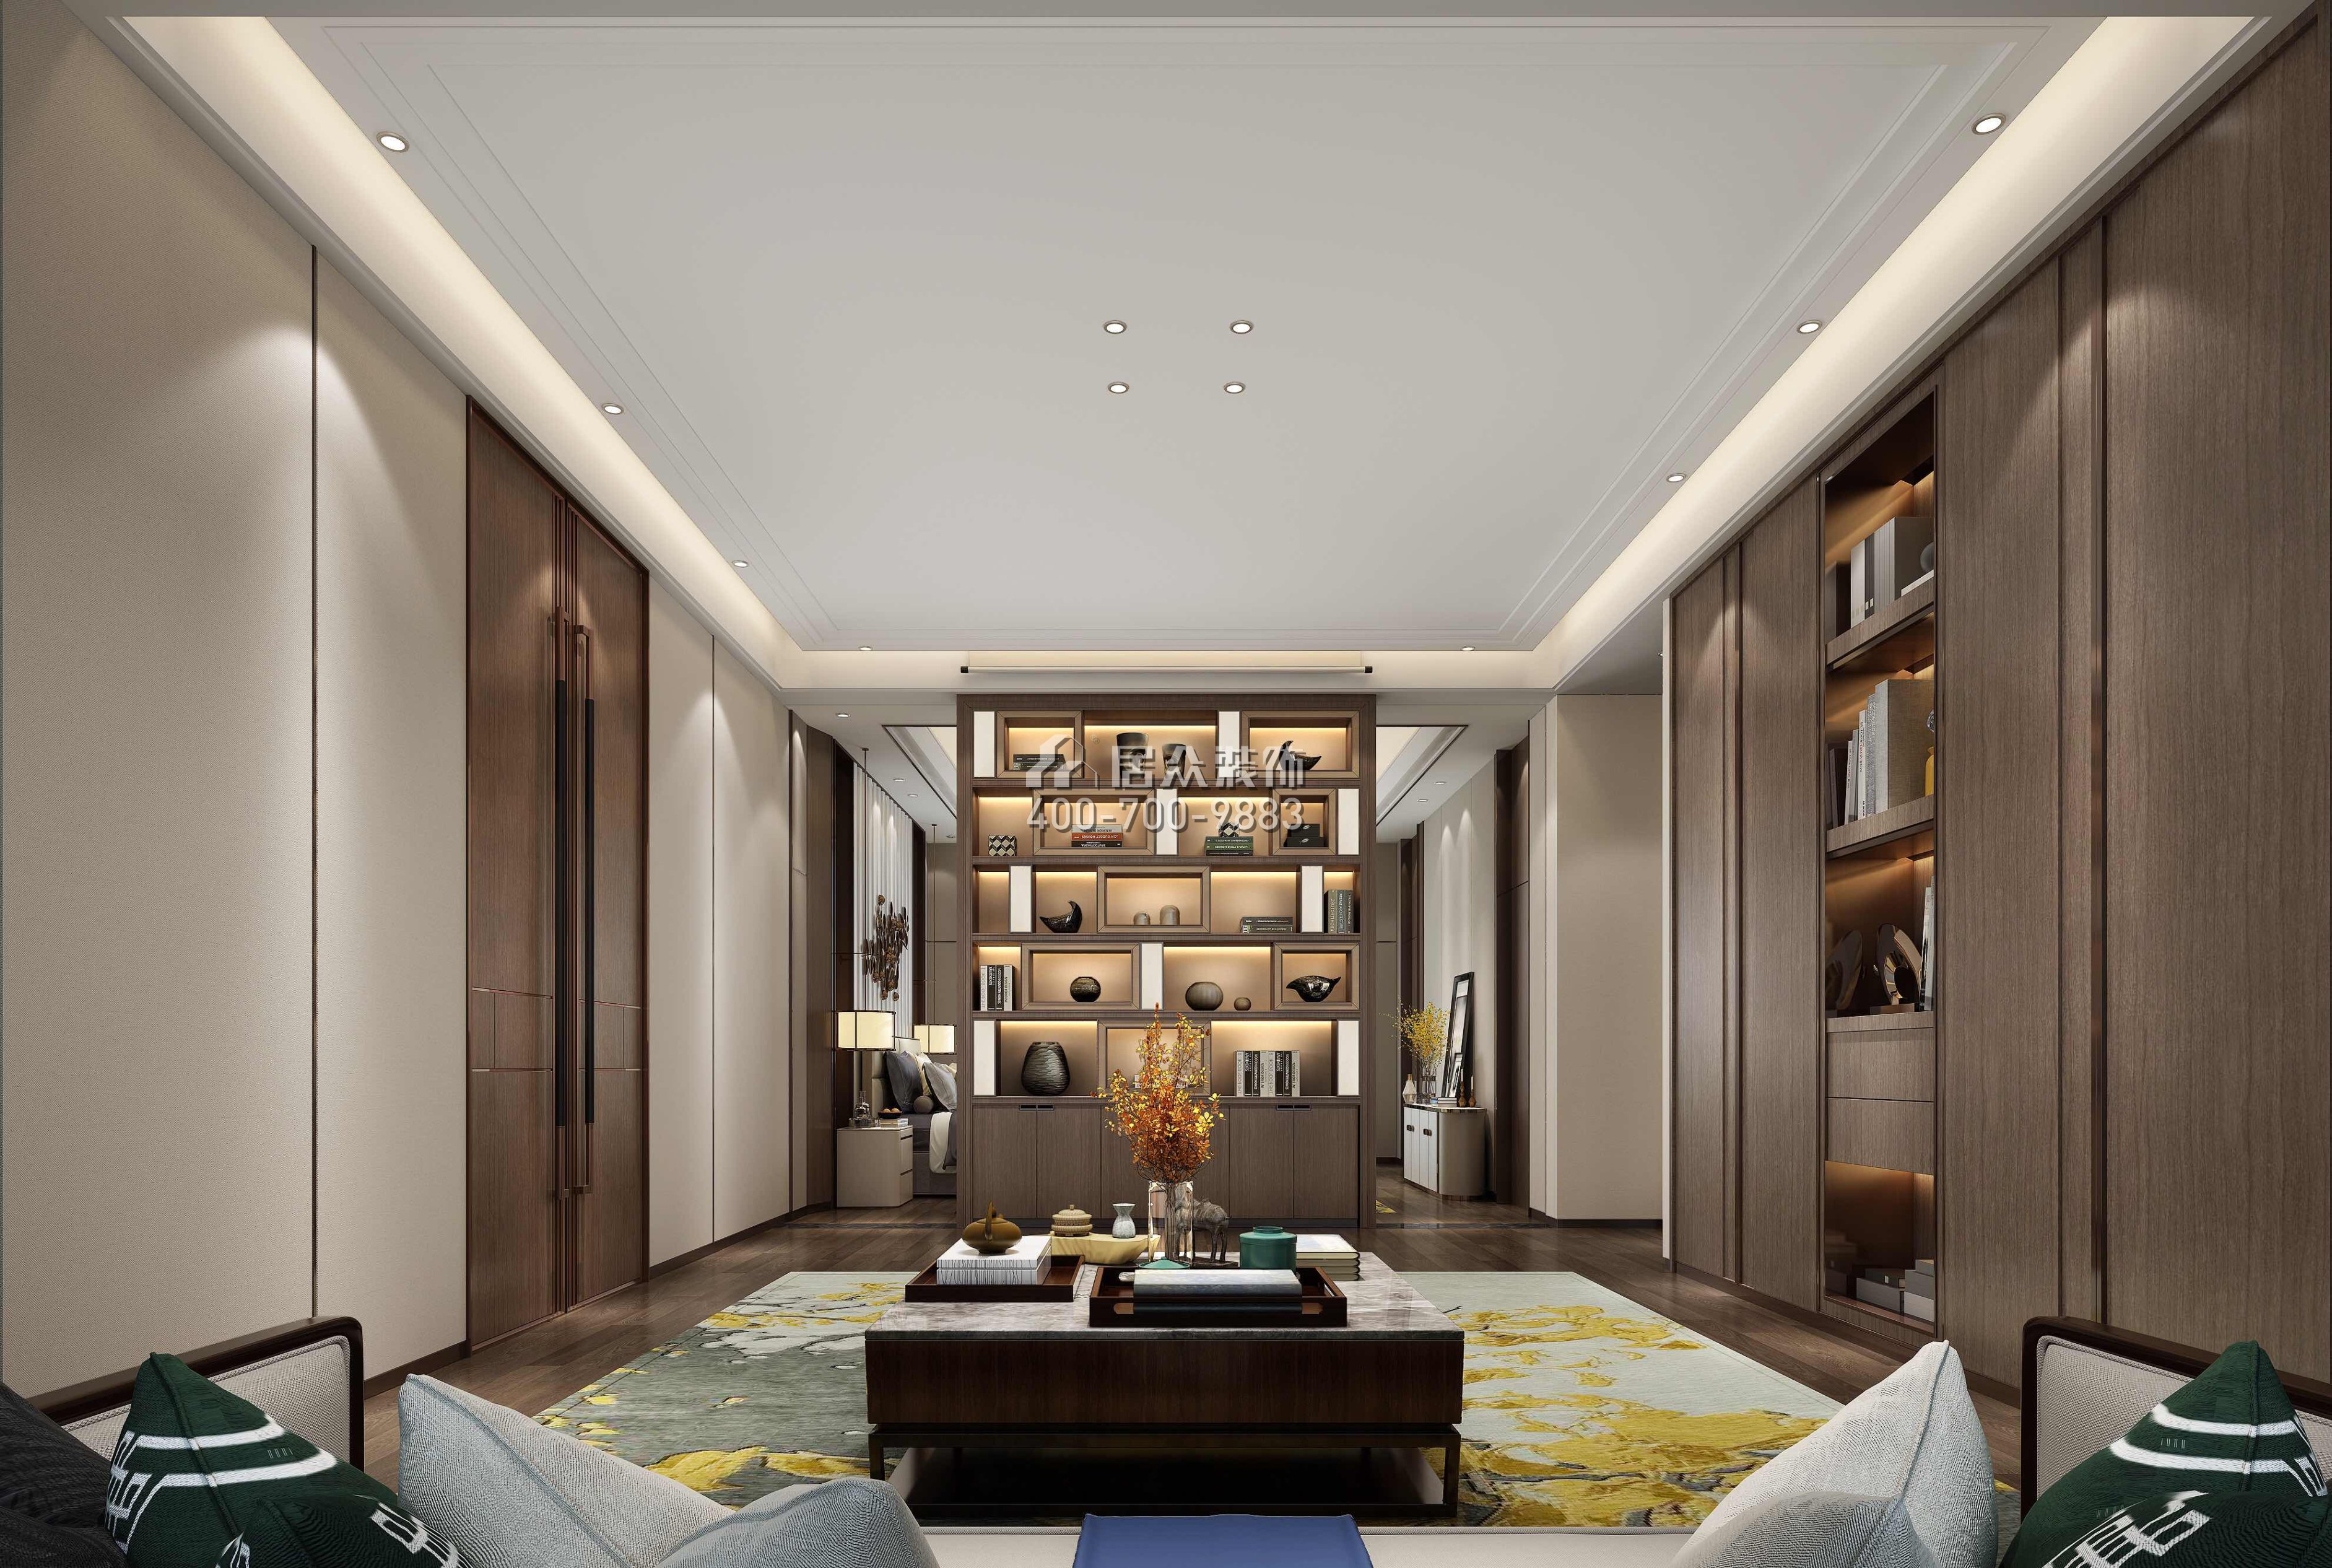 新世纪颐龙湾1000平方米中式风格别墅户型书房装修效果图